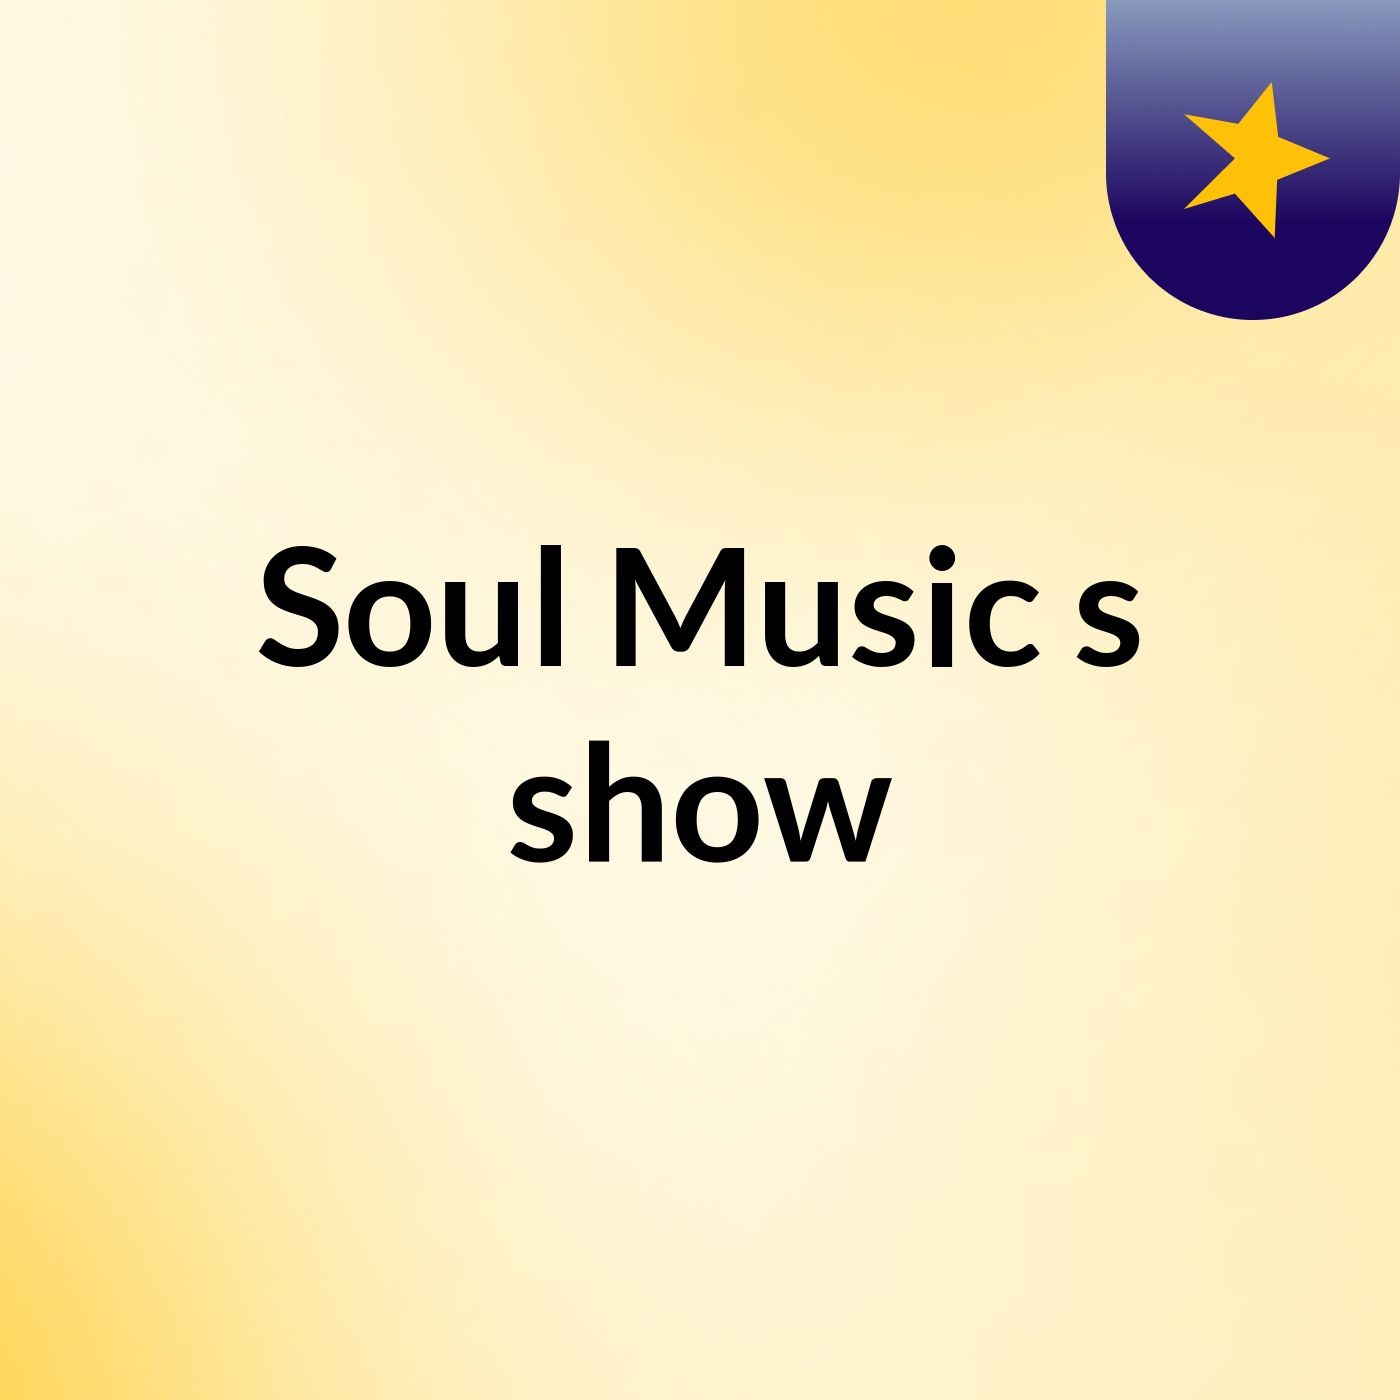 Soul Music's show